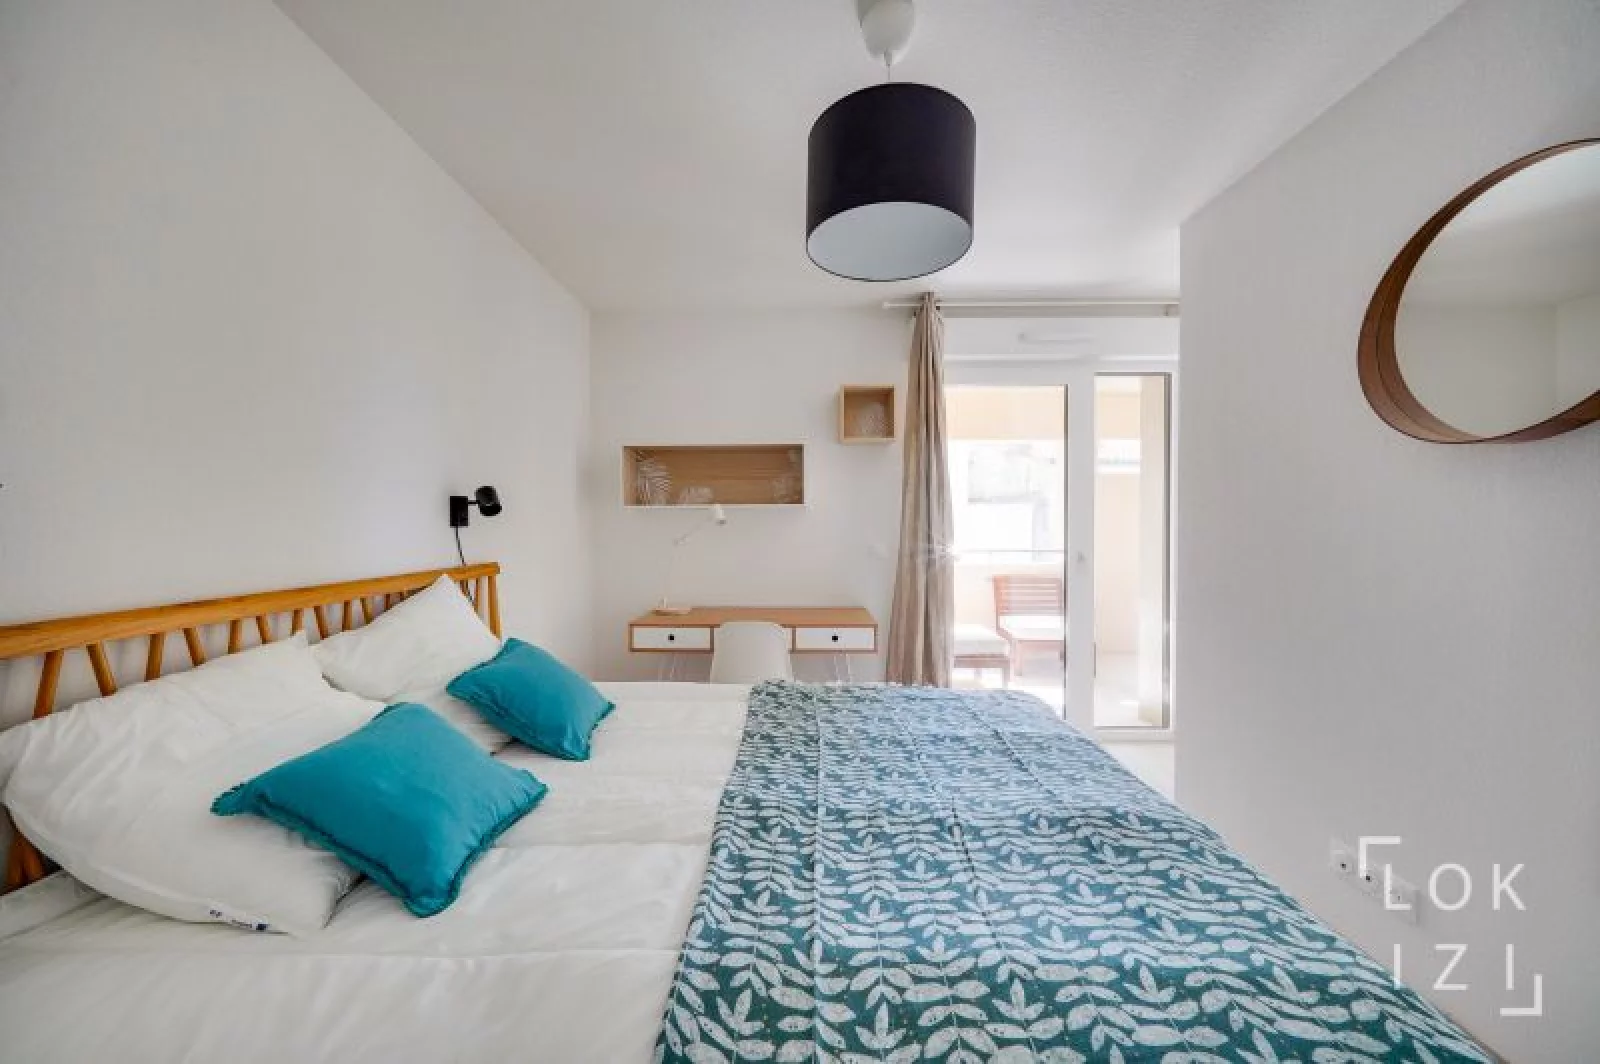 Location appartement meublé 2 pièces 43m² (Bordeaux - Bassins à flot) 